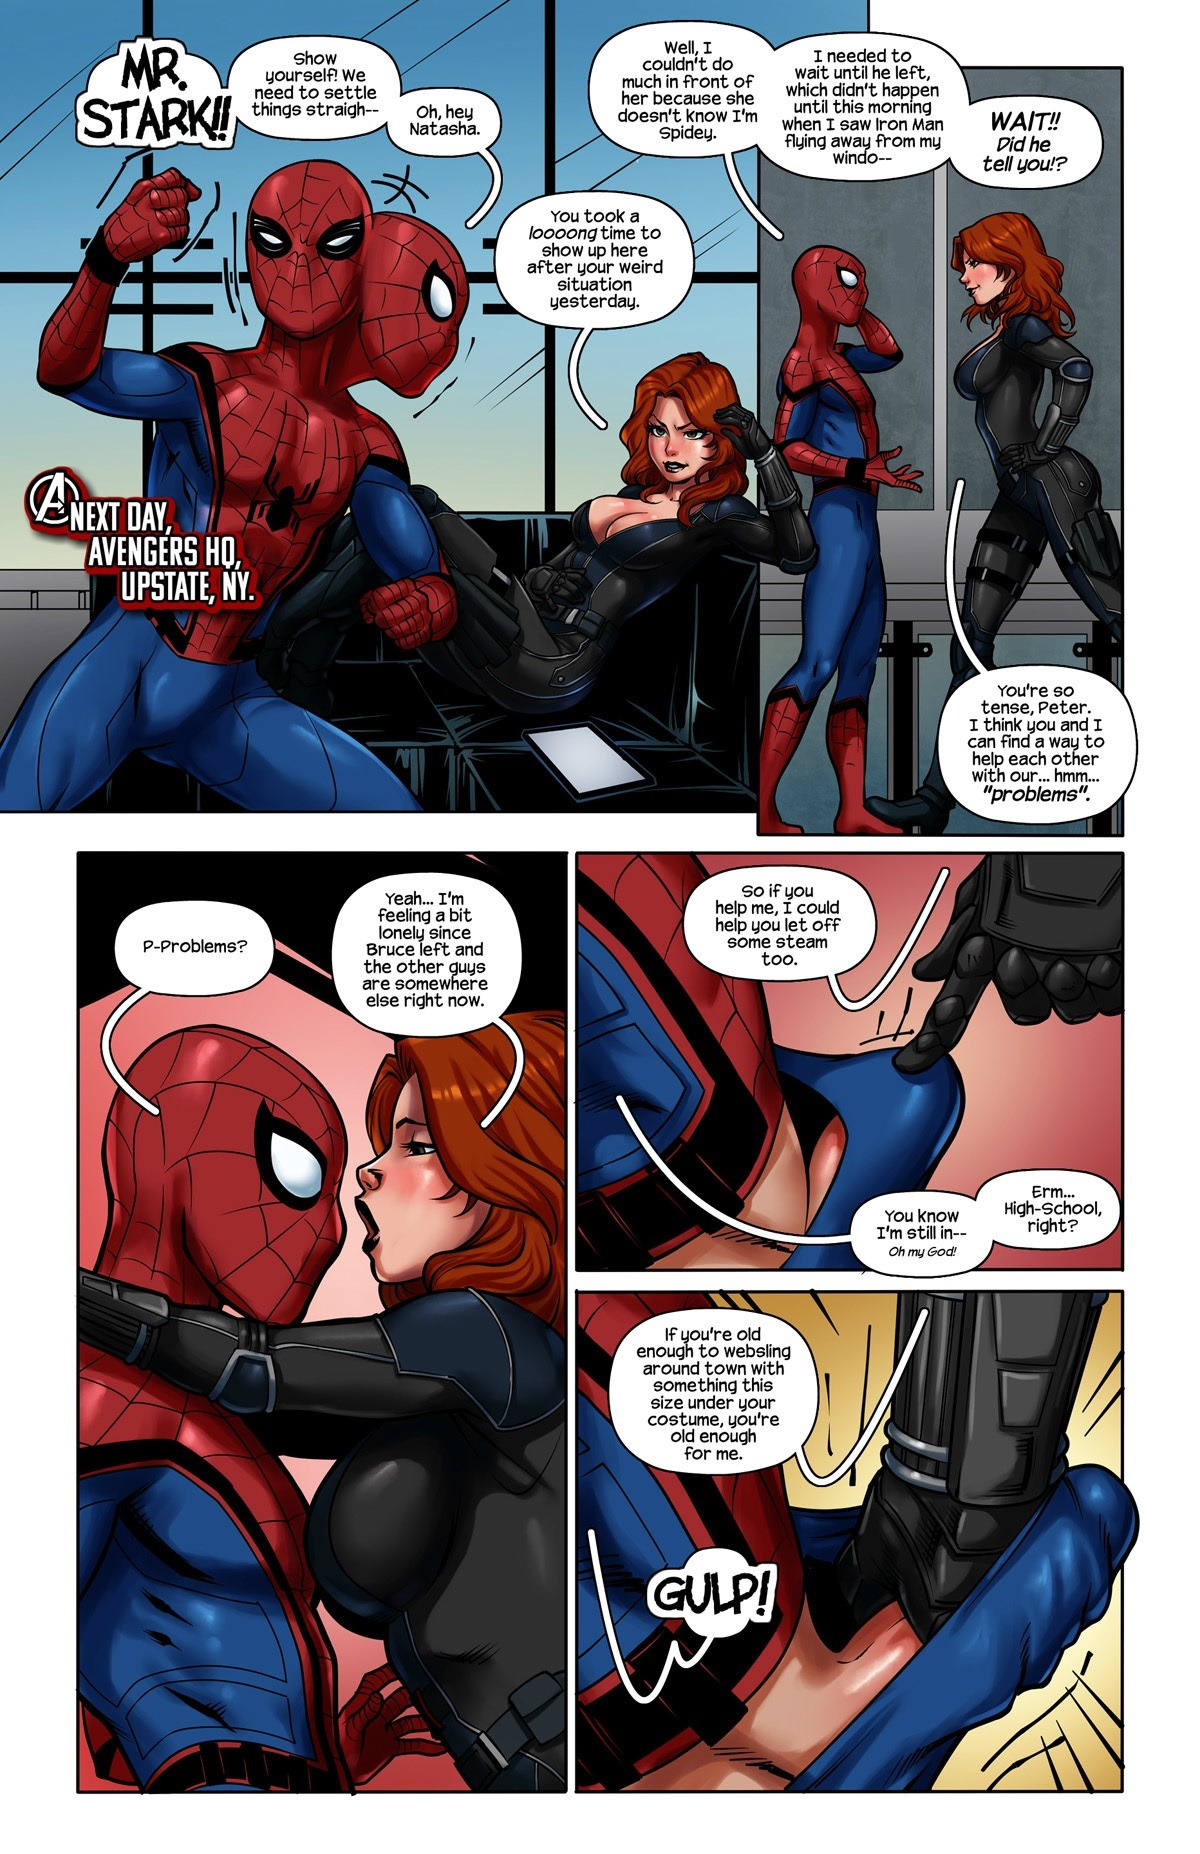 1200px x 1854px - Spiderman - Civil war - Multporn Comics & Hentai manga